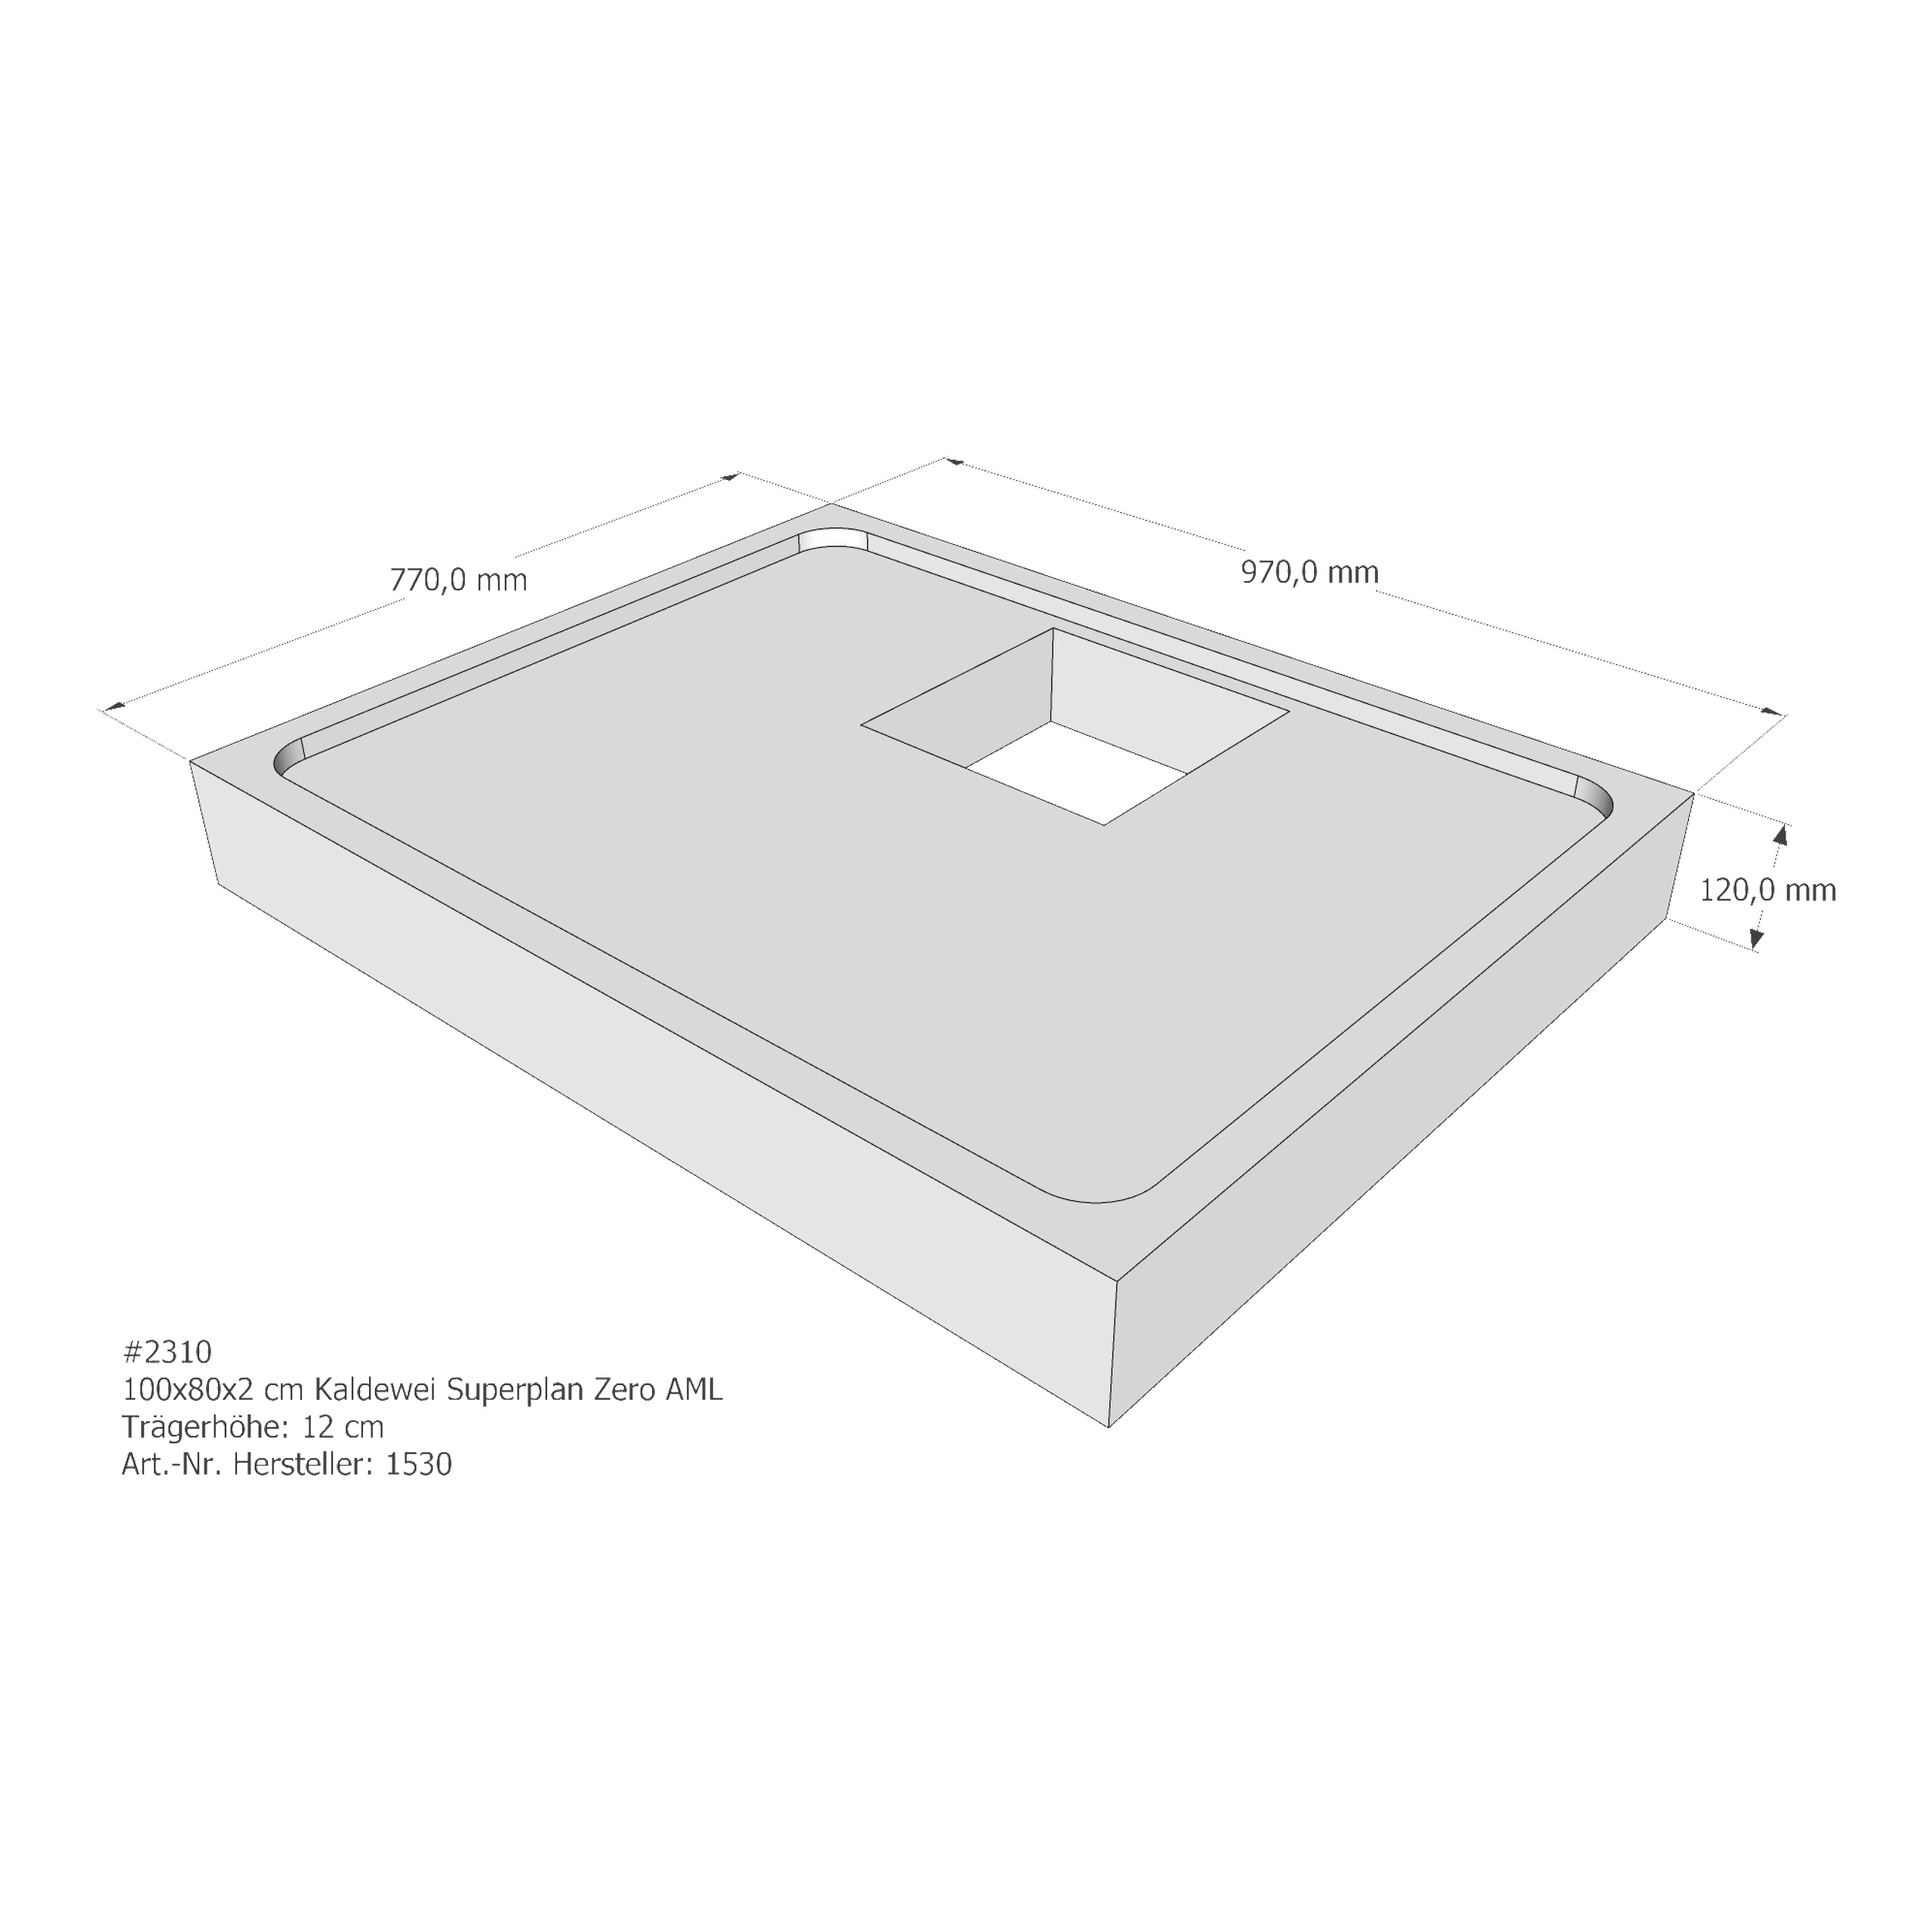 Duschwannenträger für Kaldewei Superplan Zero 100 × 80 × 2 cm